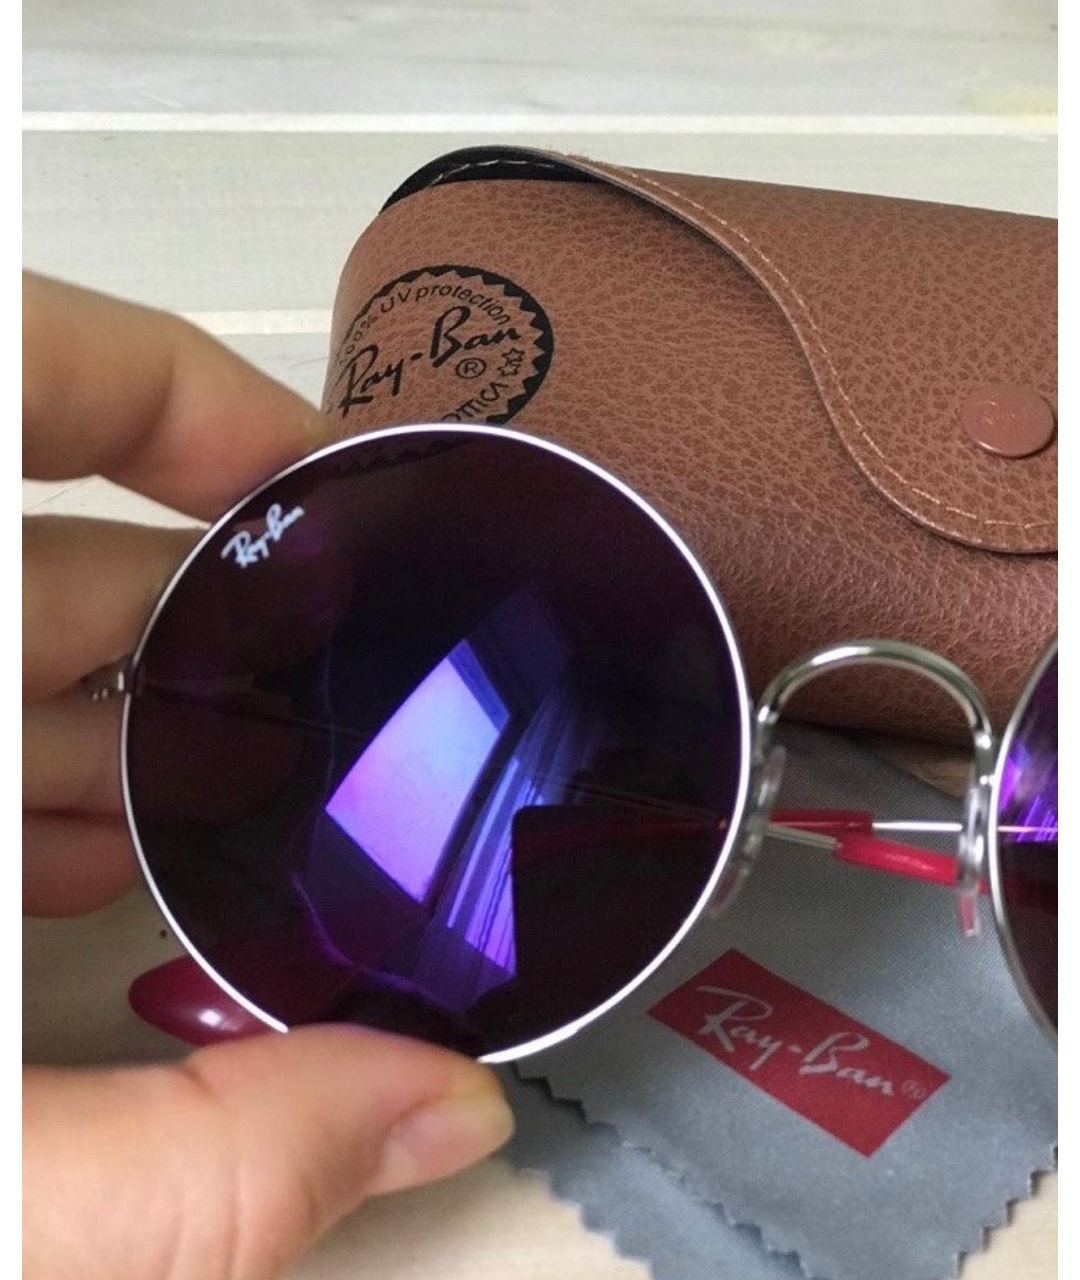 RAY BAN Розовые металлические солнцезащитные очки, фото 3